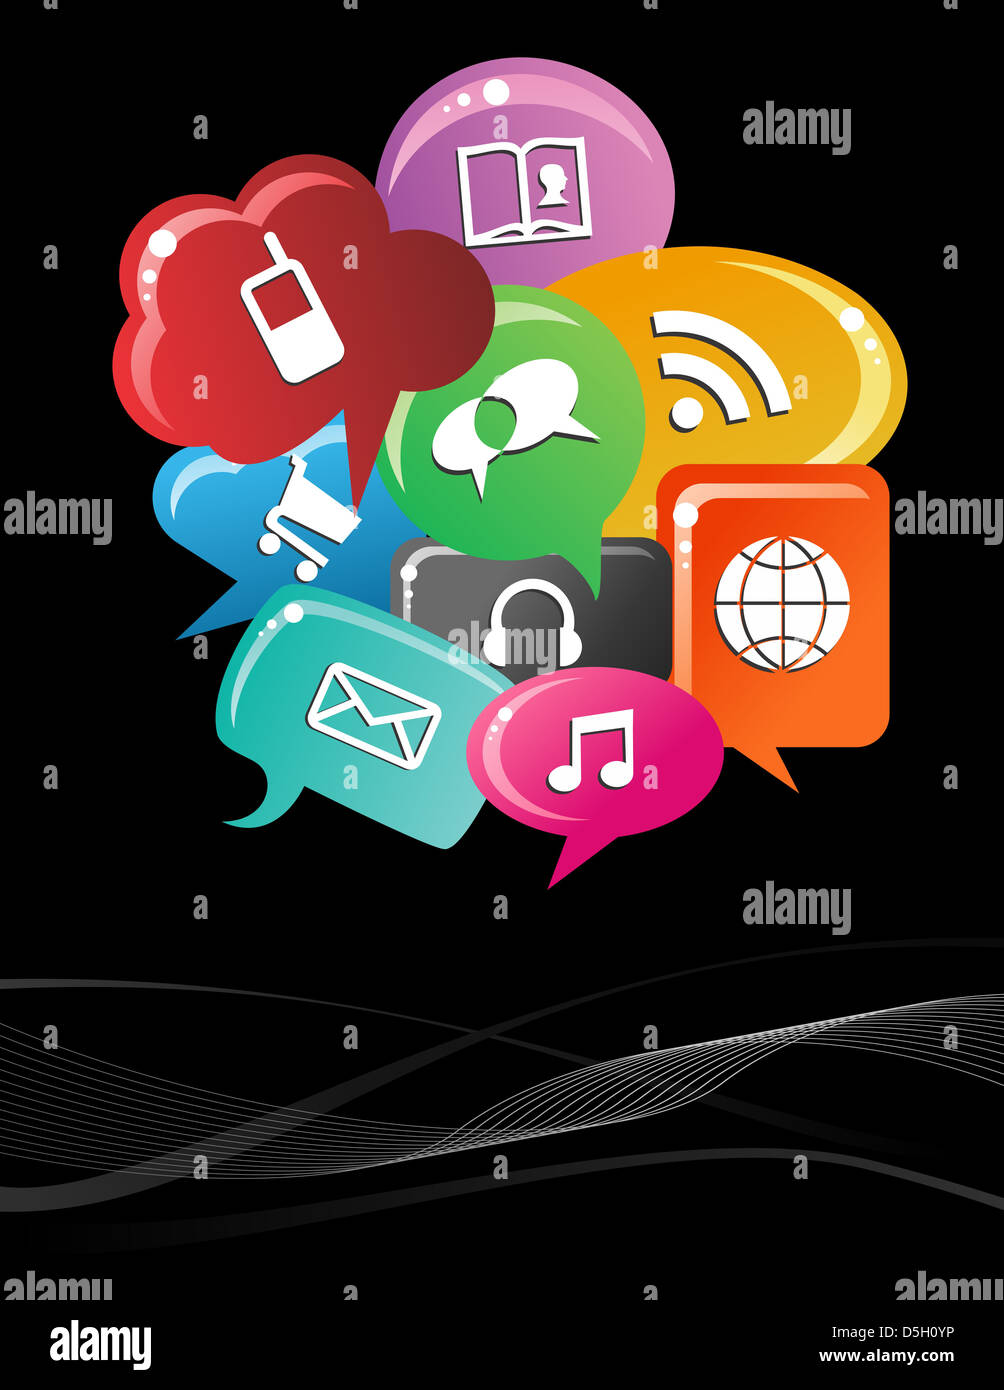 Social Media-Symbole in bunte Blase Rede Layout gesetzt. Vektor-Datei geschichtet für einfache Handhabung und individuelle Farbgebung. Stockfoto